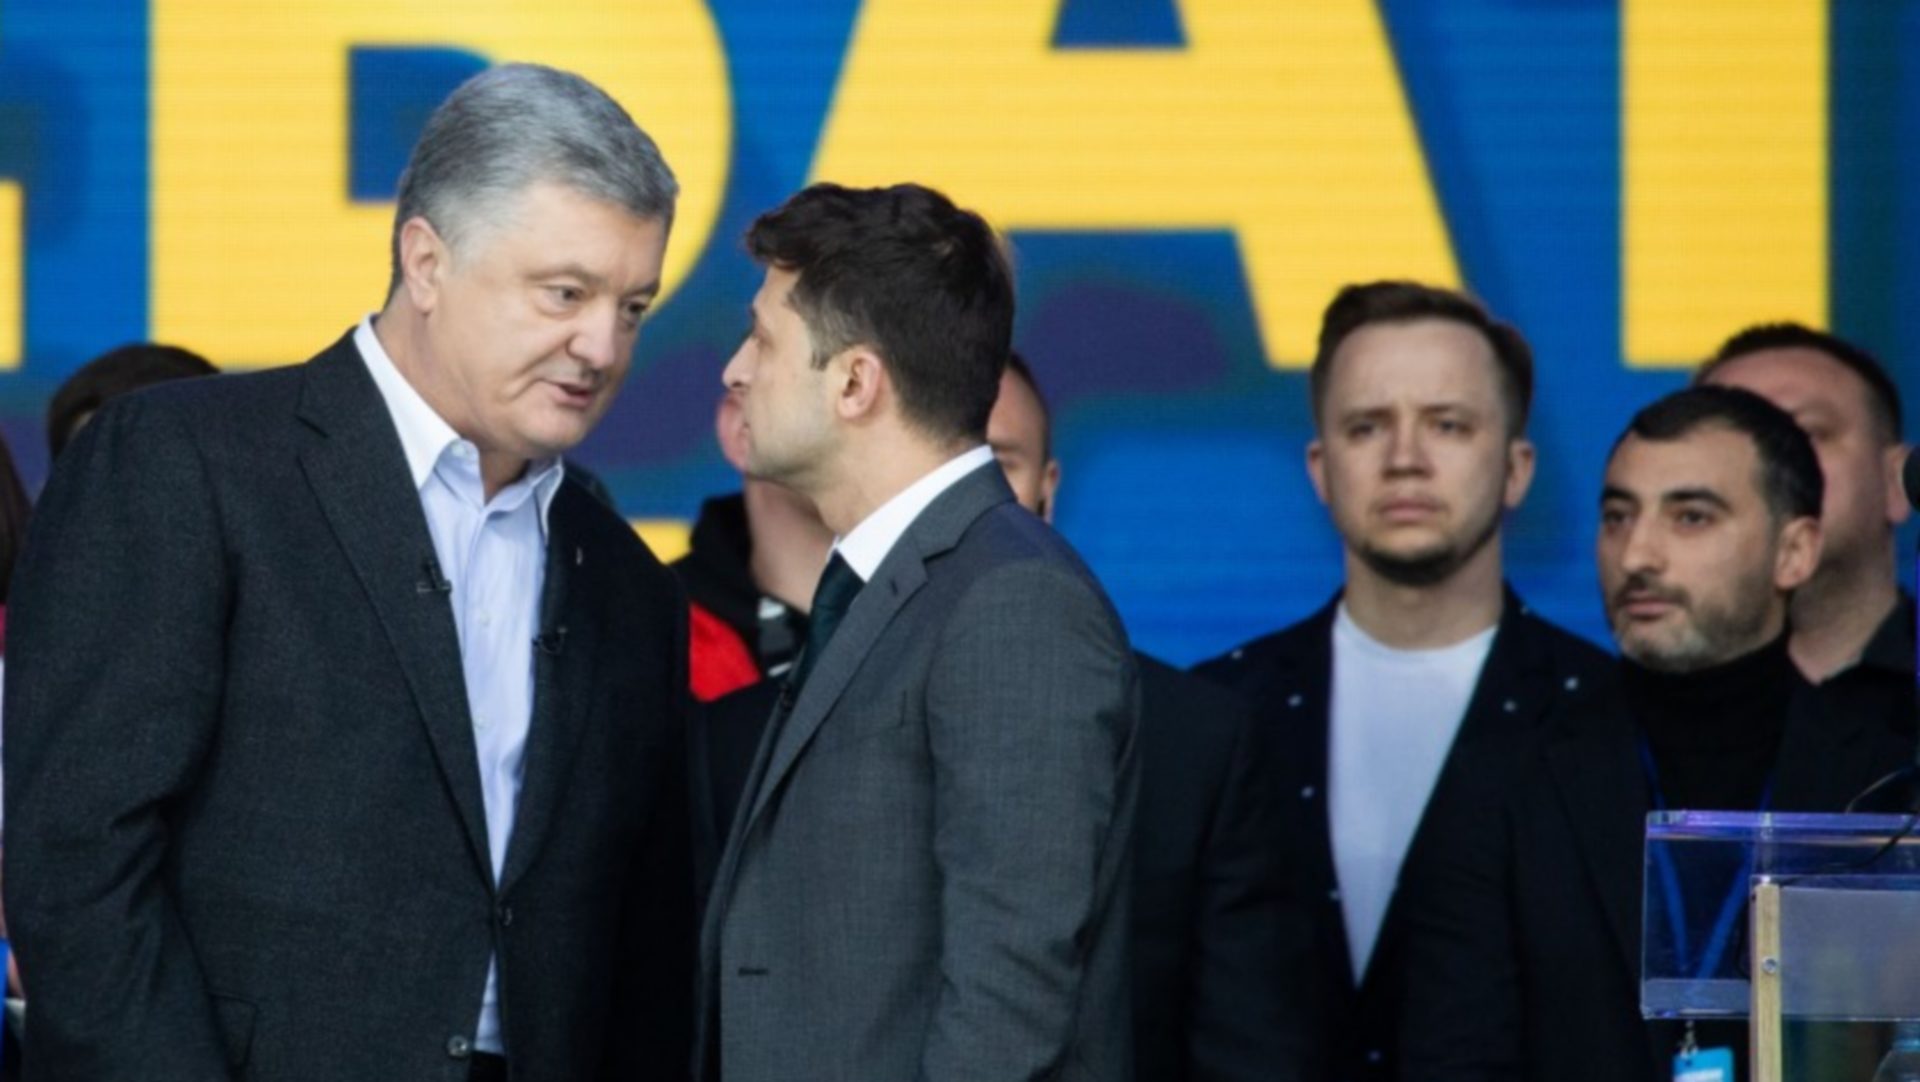 La lutte entre Porochenko (à g.) et Zelensky (à dr.) pour la présidence de l'Ukraine a tourné en faveur du second | wikimedia commons CC BY 4.0